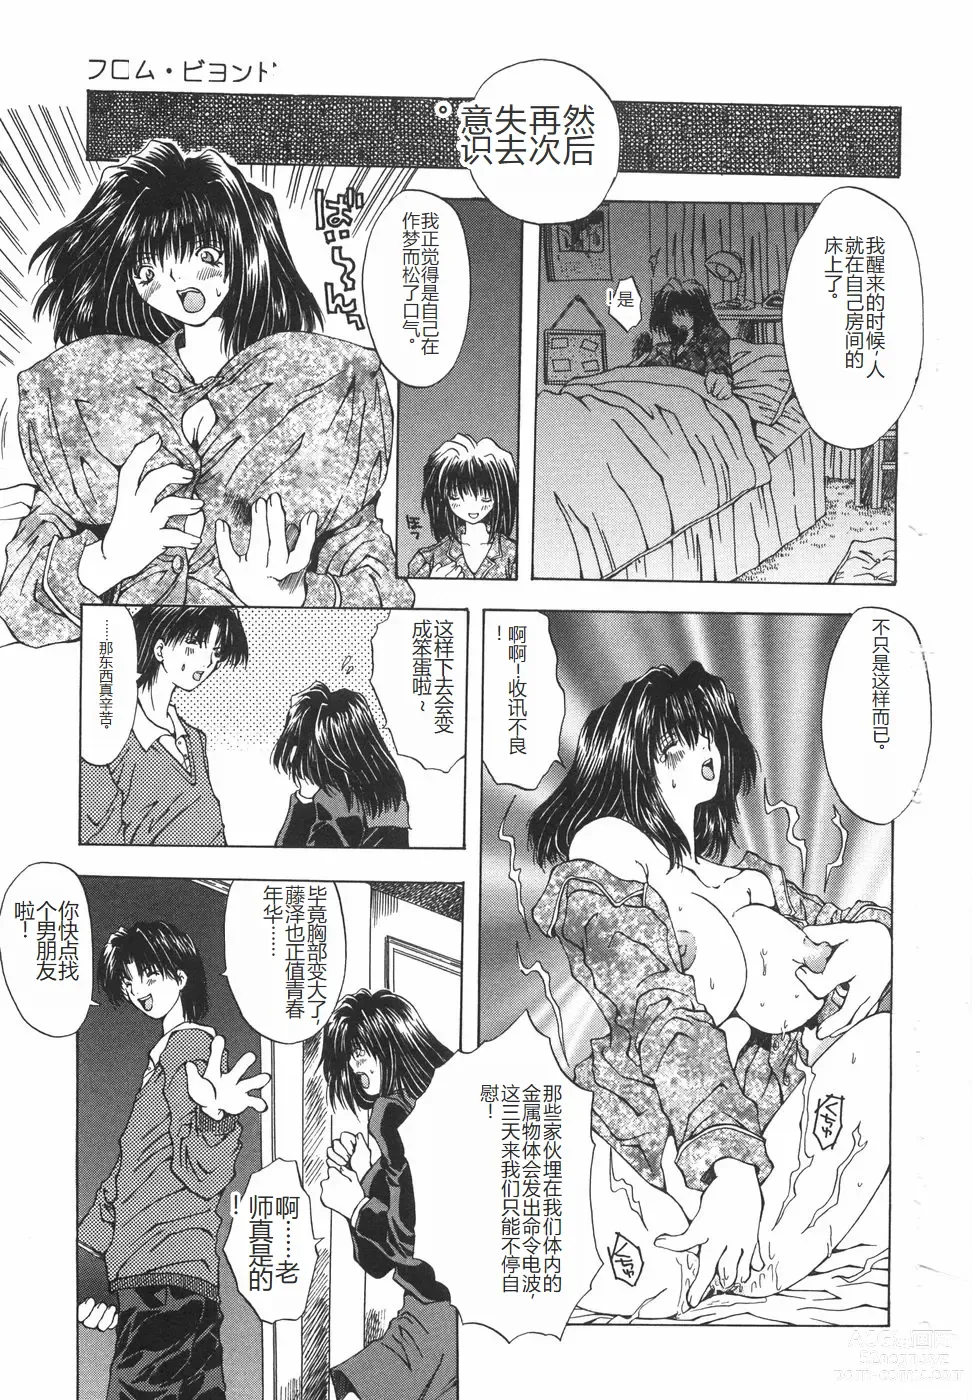 Page 152 of manga Shokuzai